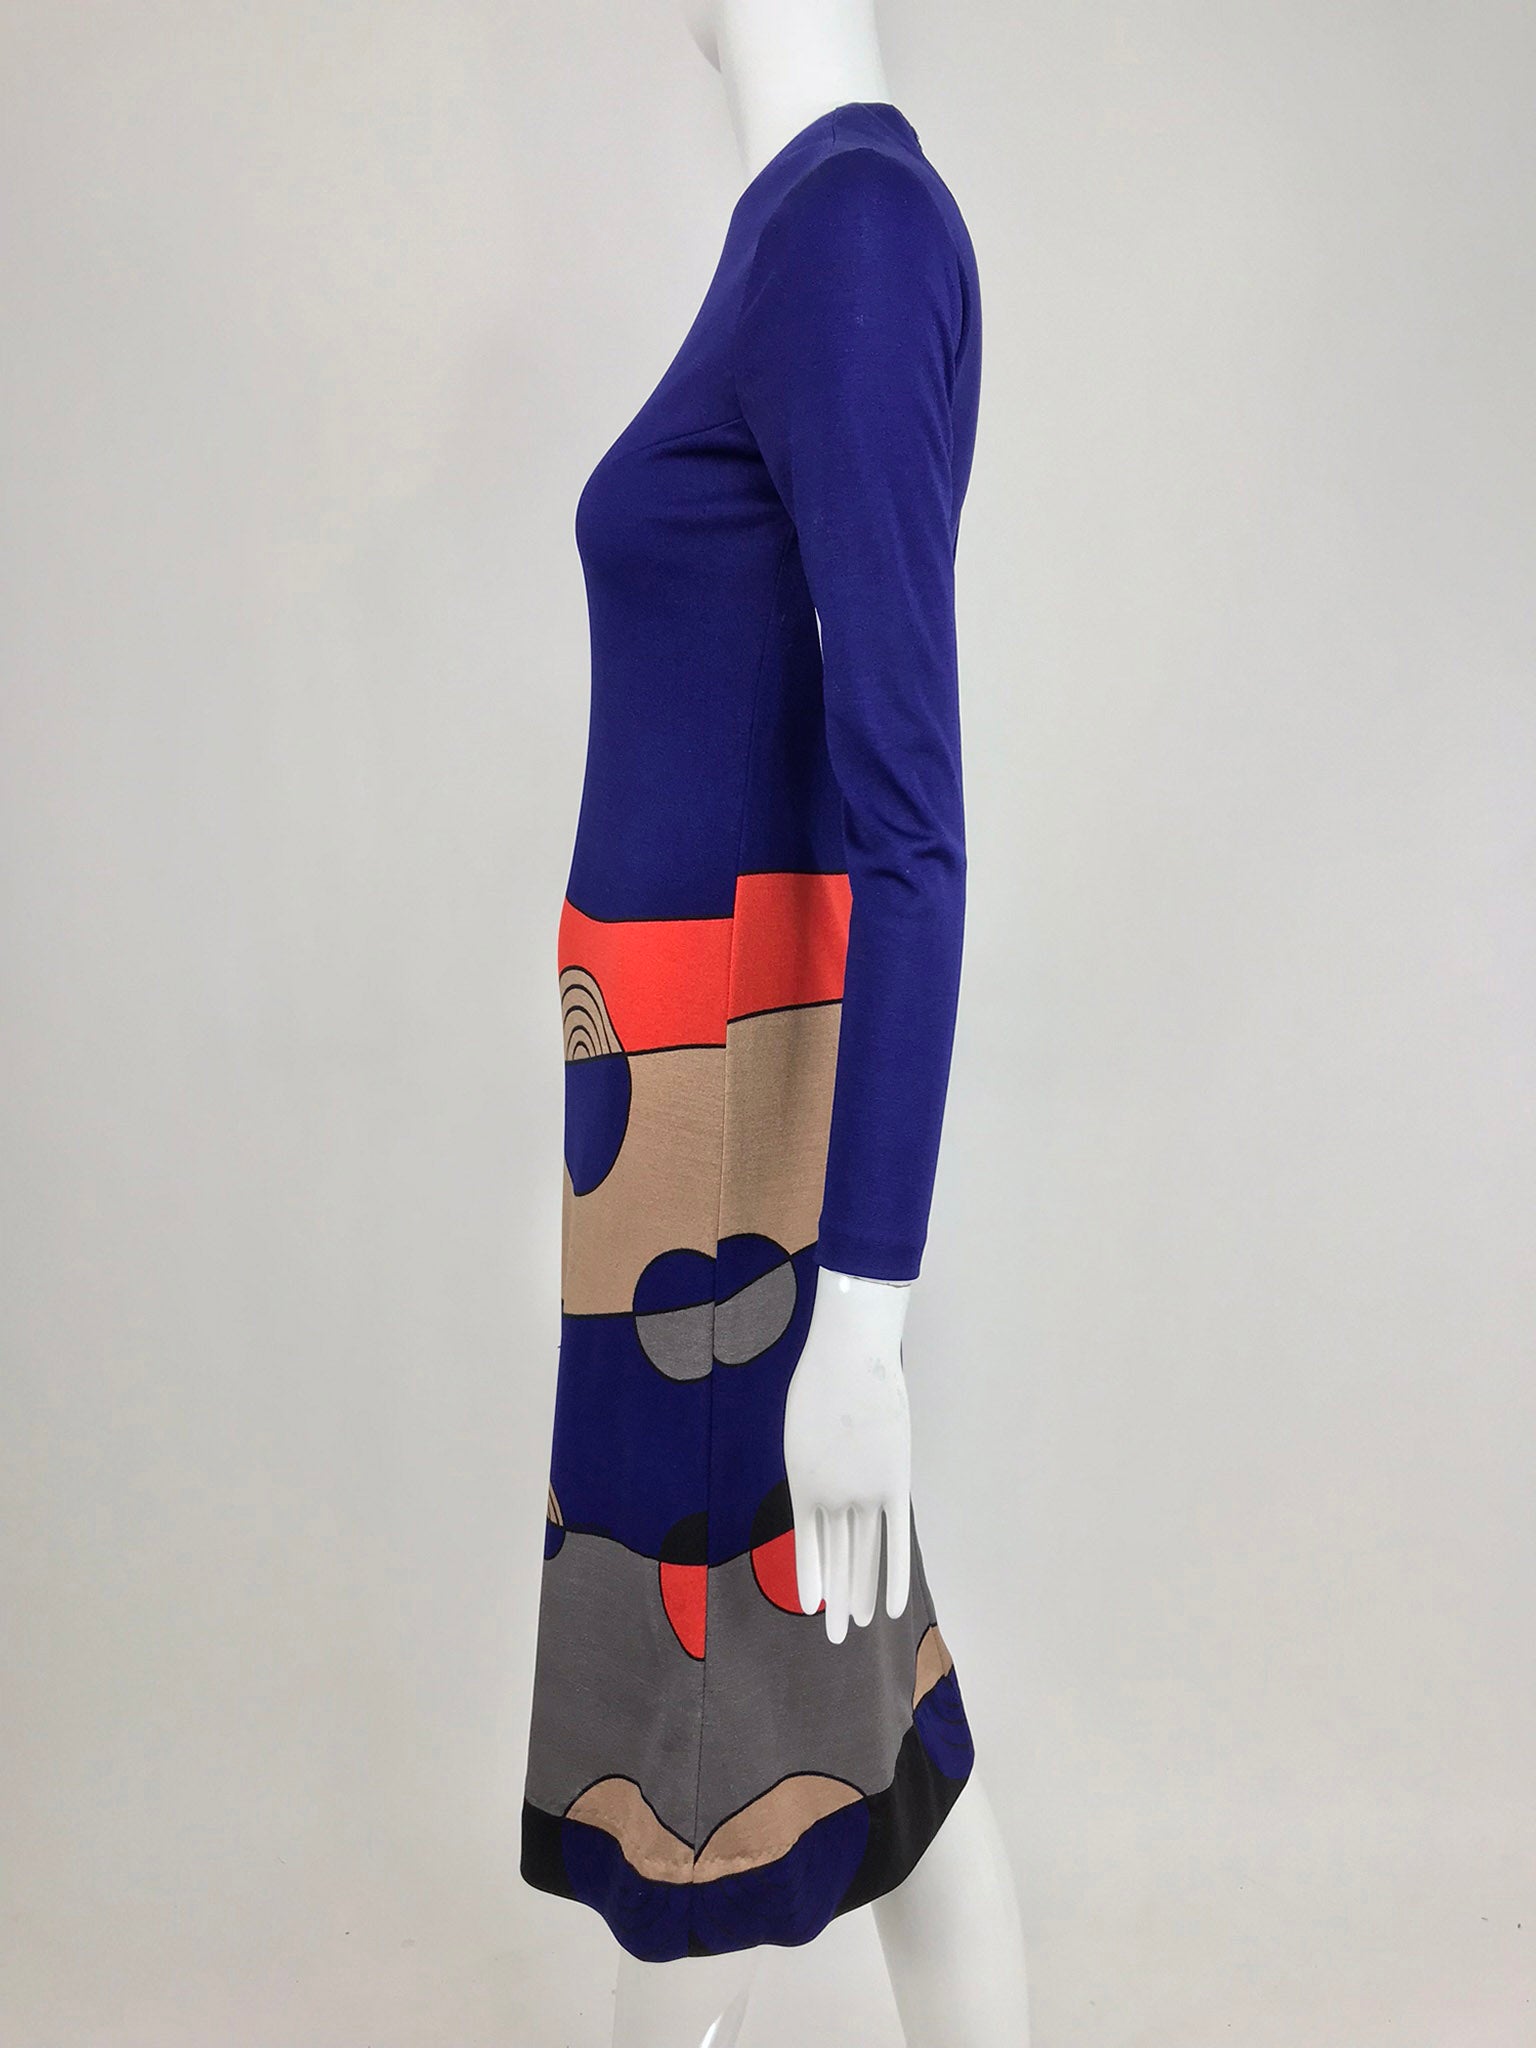 SOLD Louis Feraud Op Art Mod print jersey dress 1960s – Palm Beach